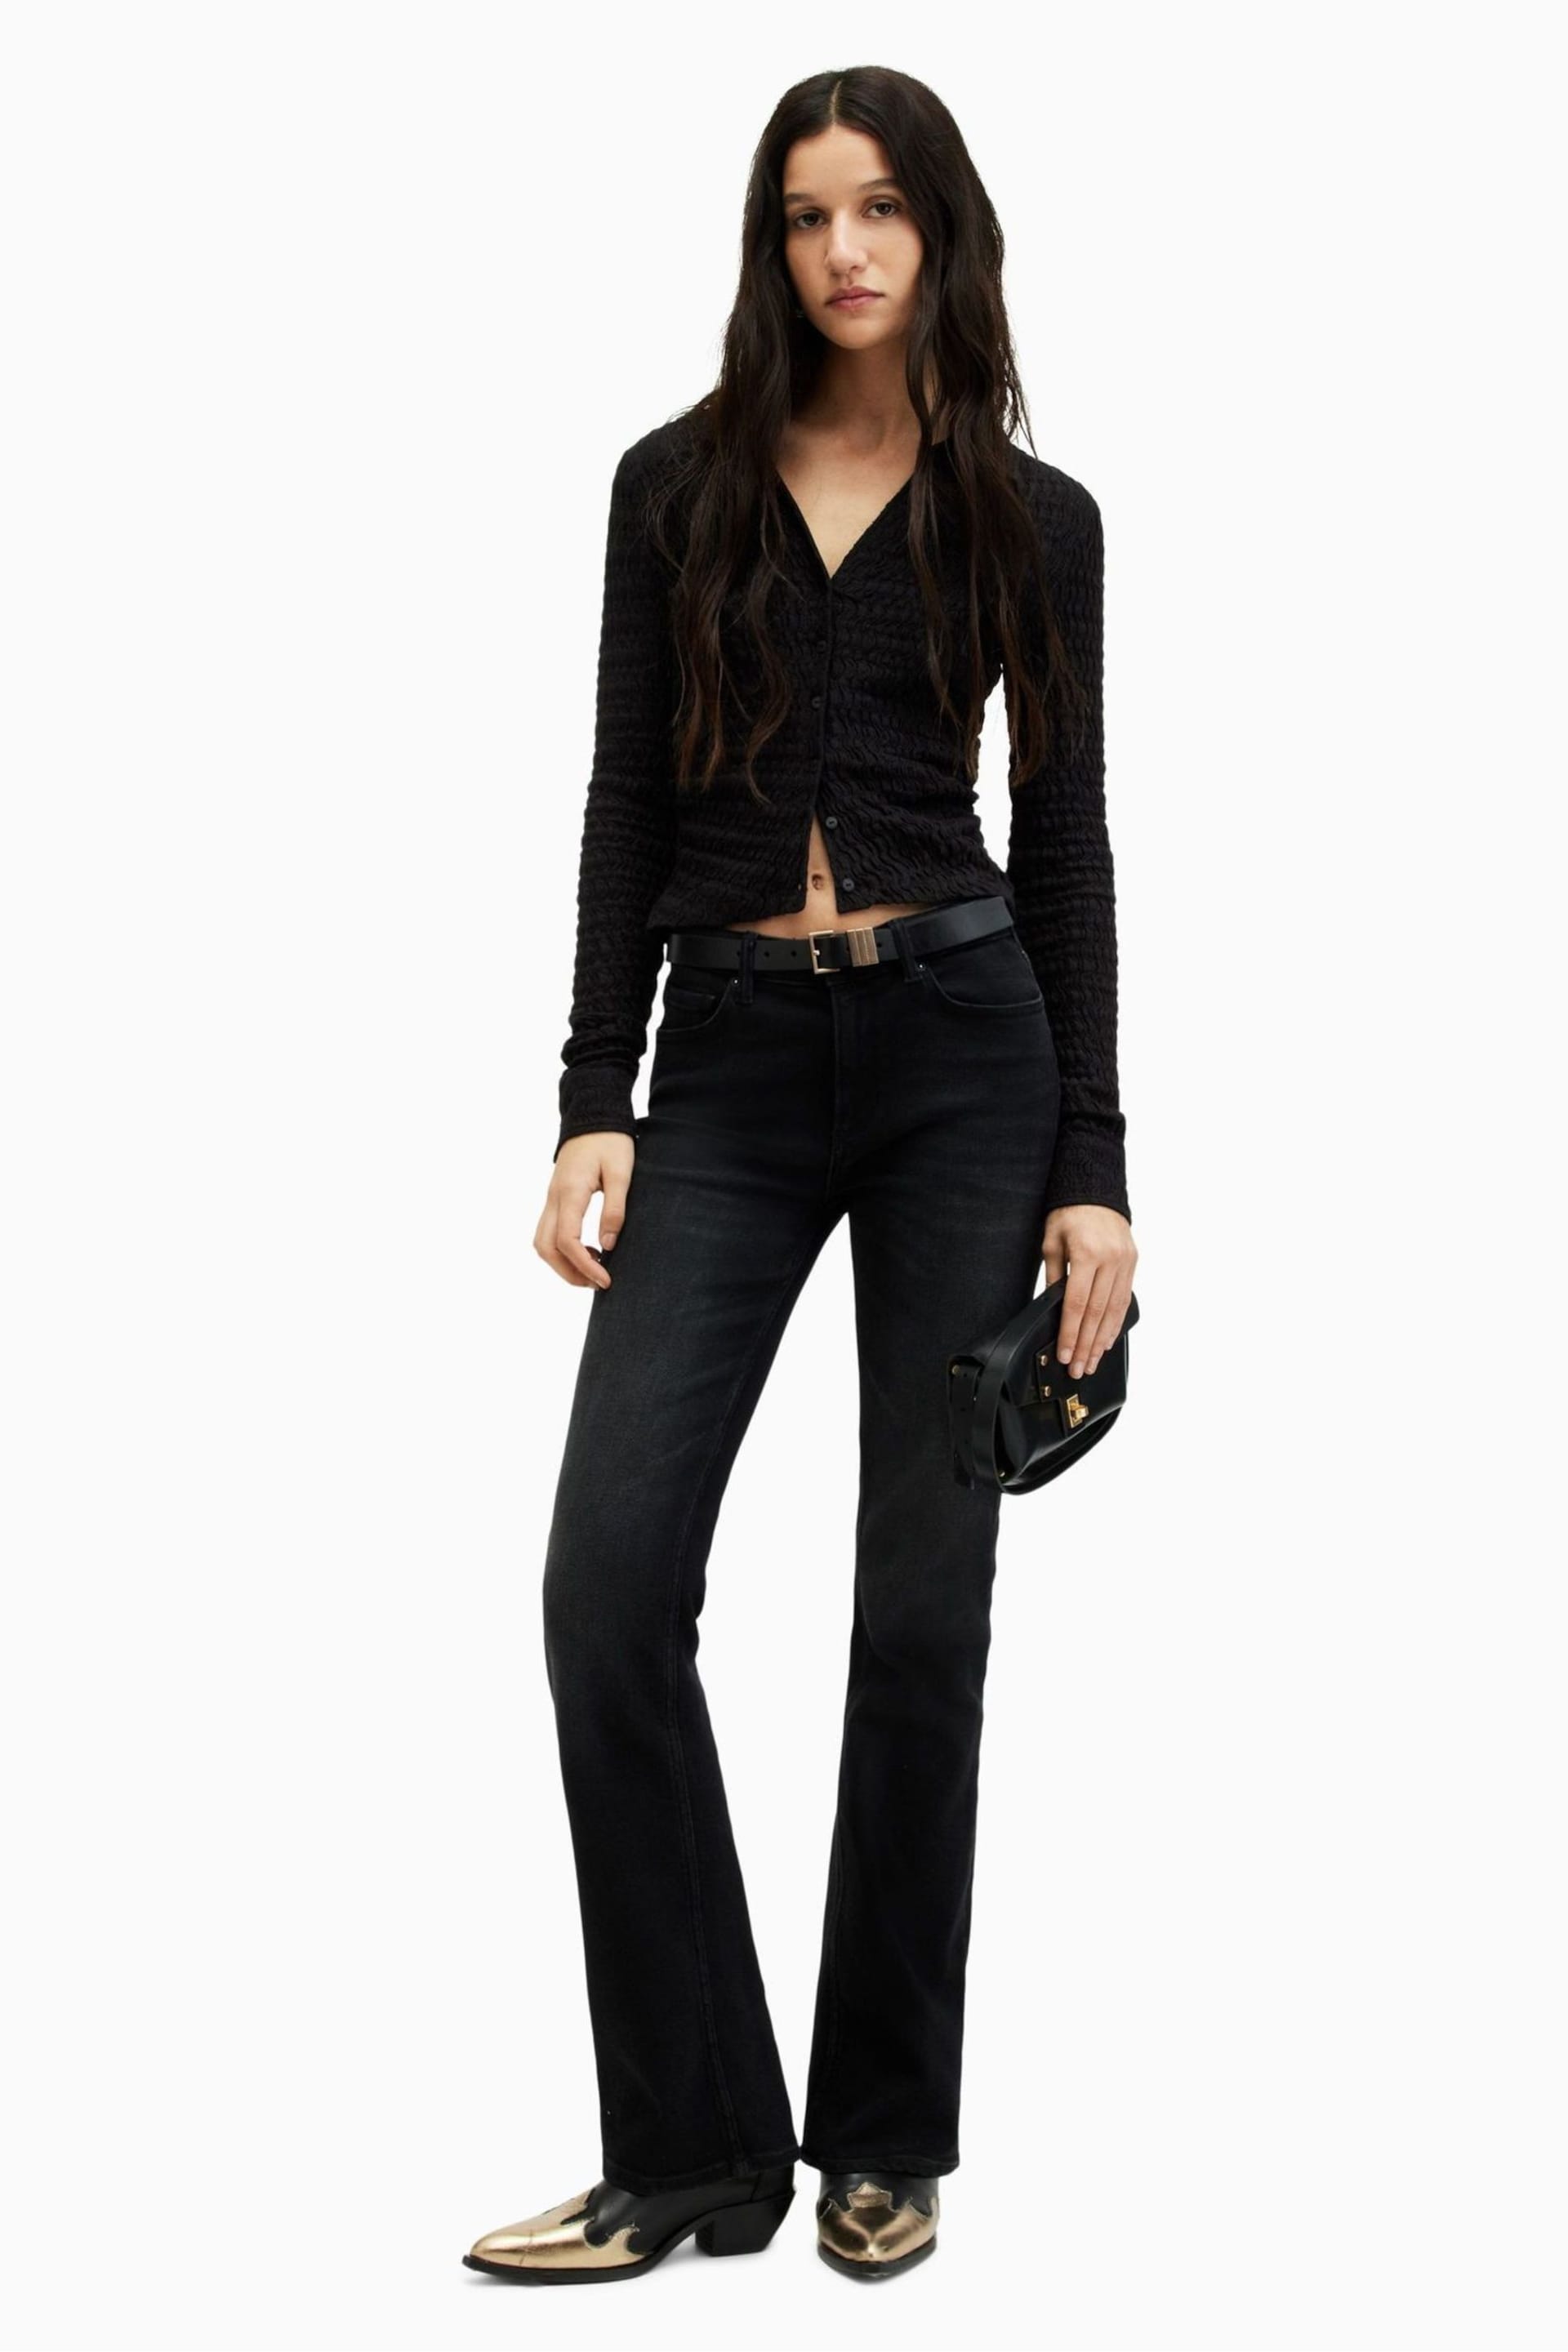 AllSaints Black Connie Shirt - Image 4 of 6